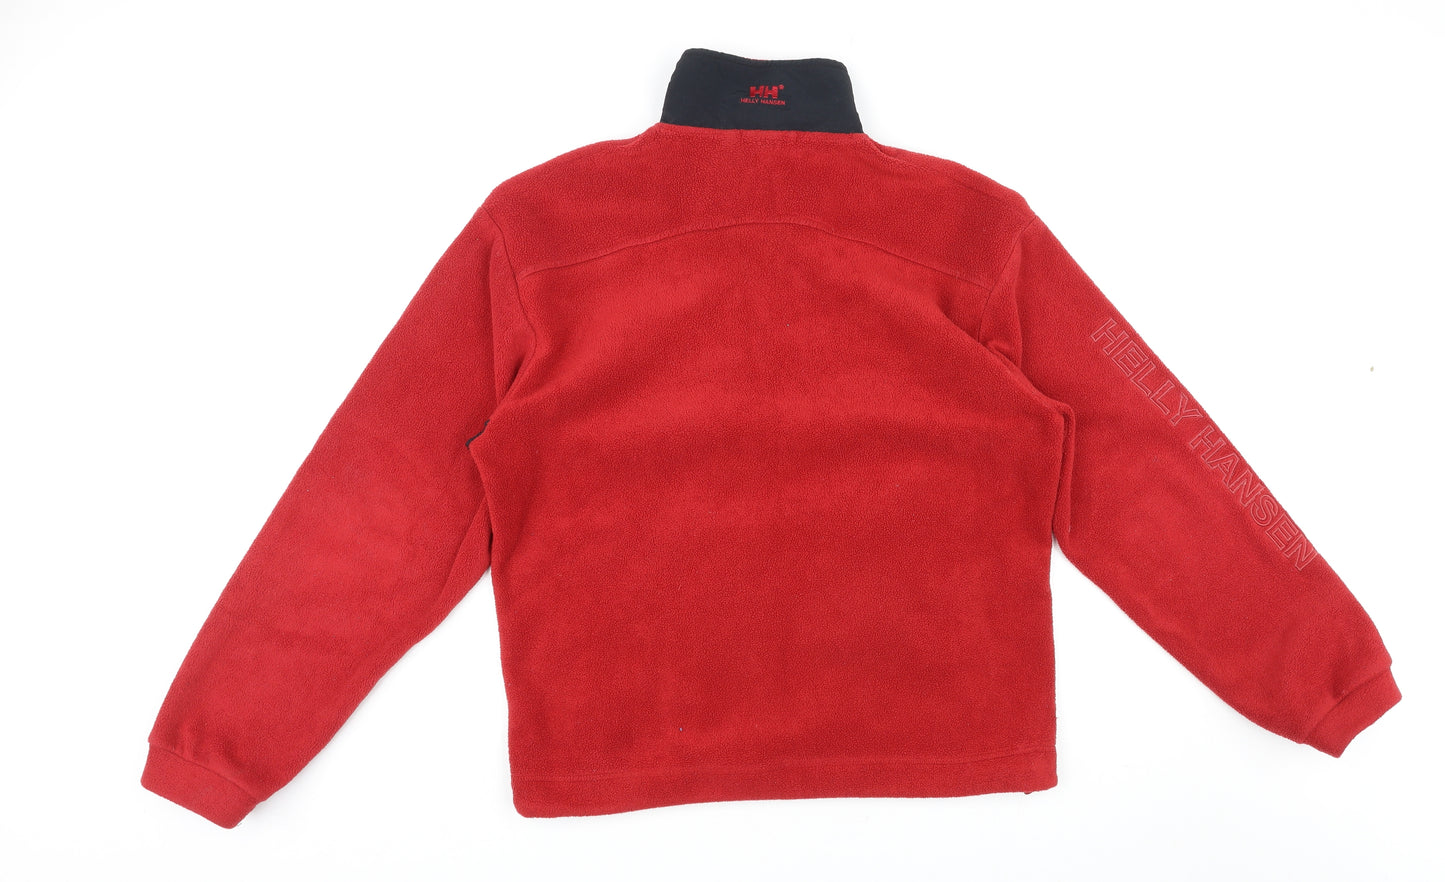 Helly Hansen Mens Red Polyester Henley Sweatshirt Size XL